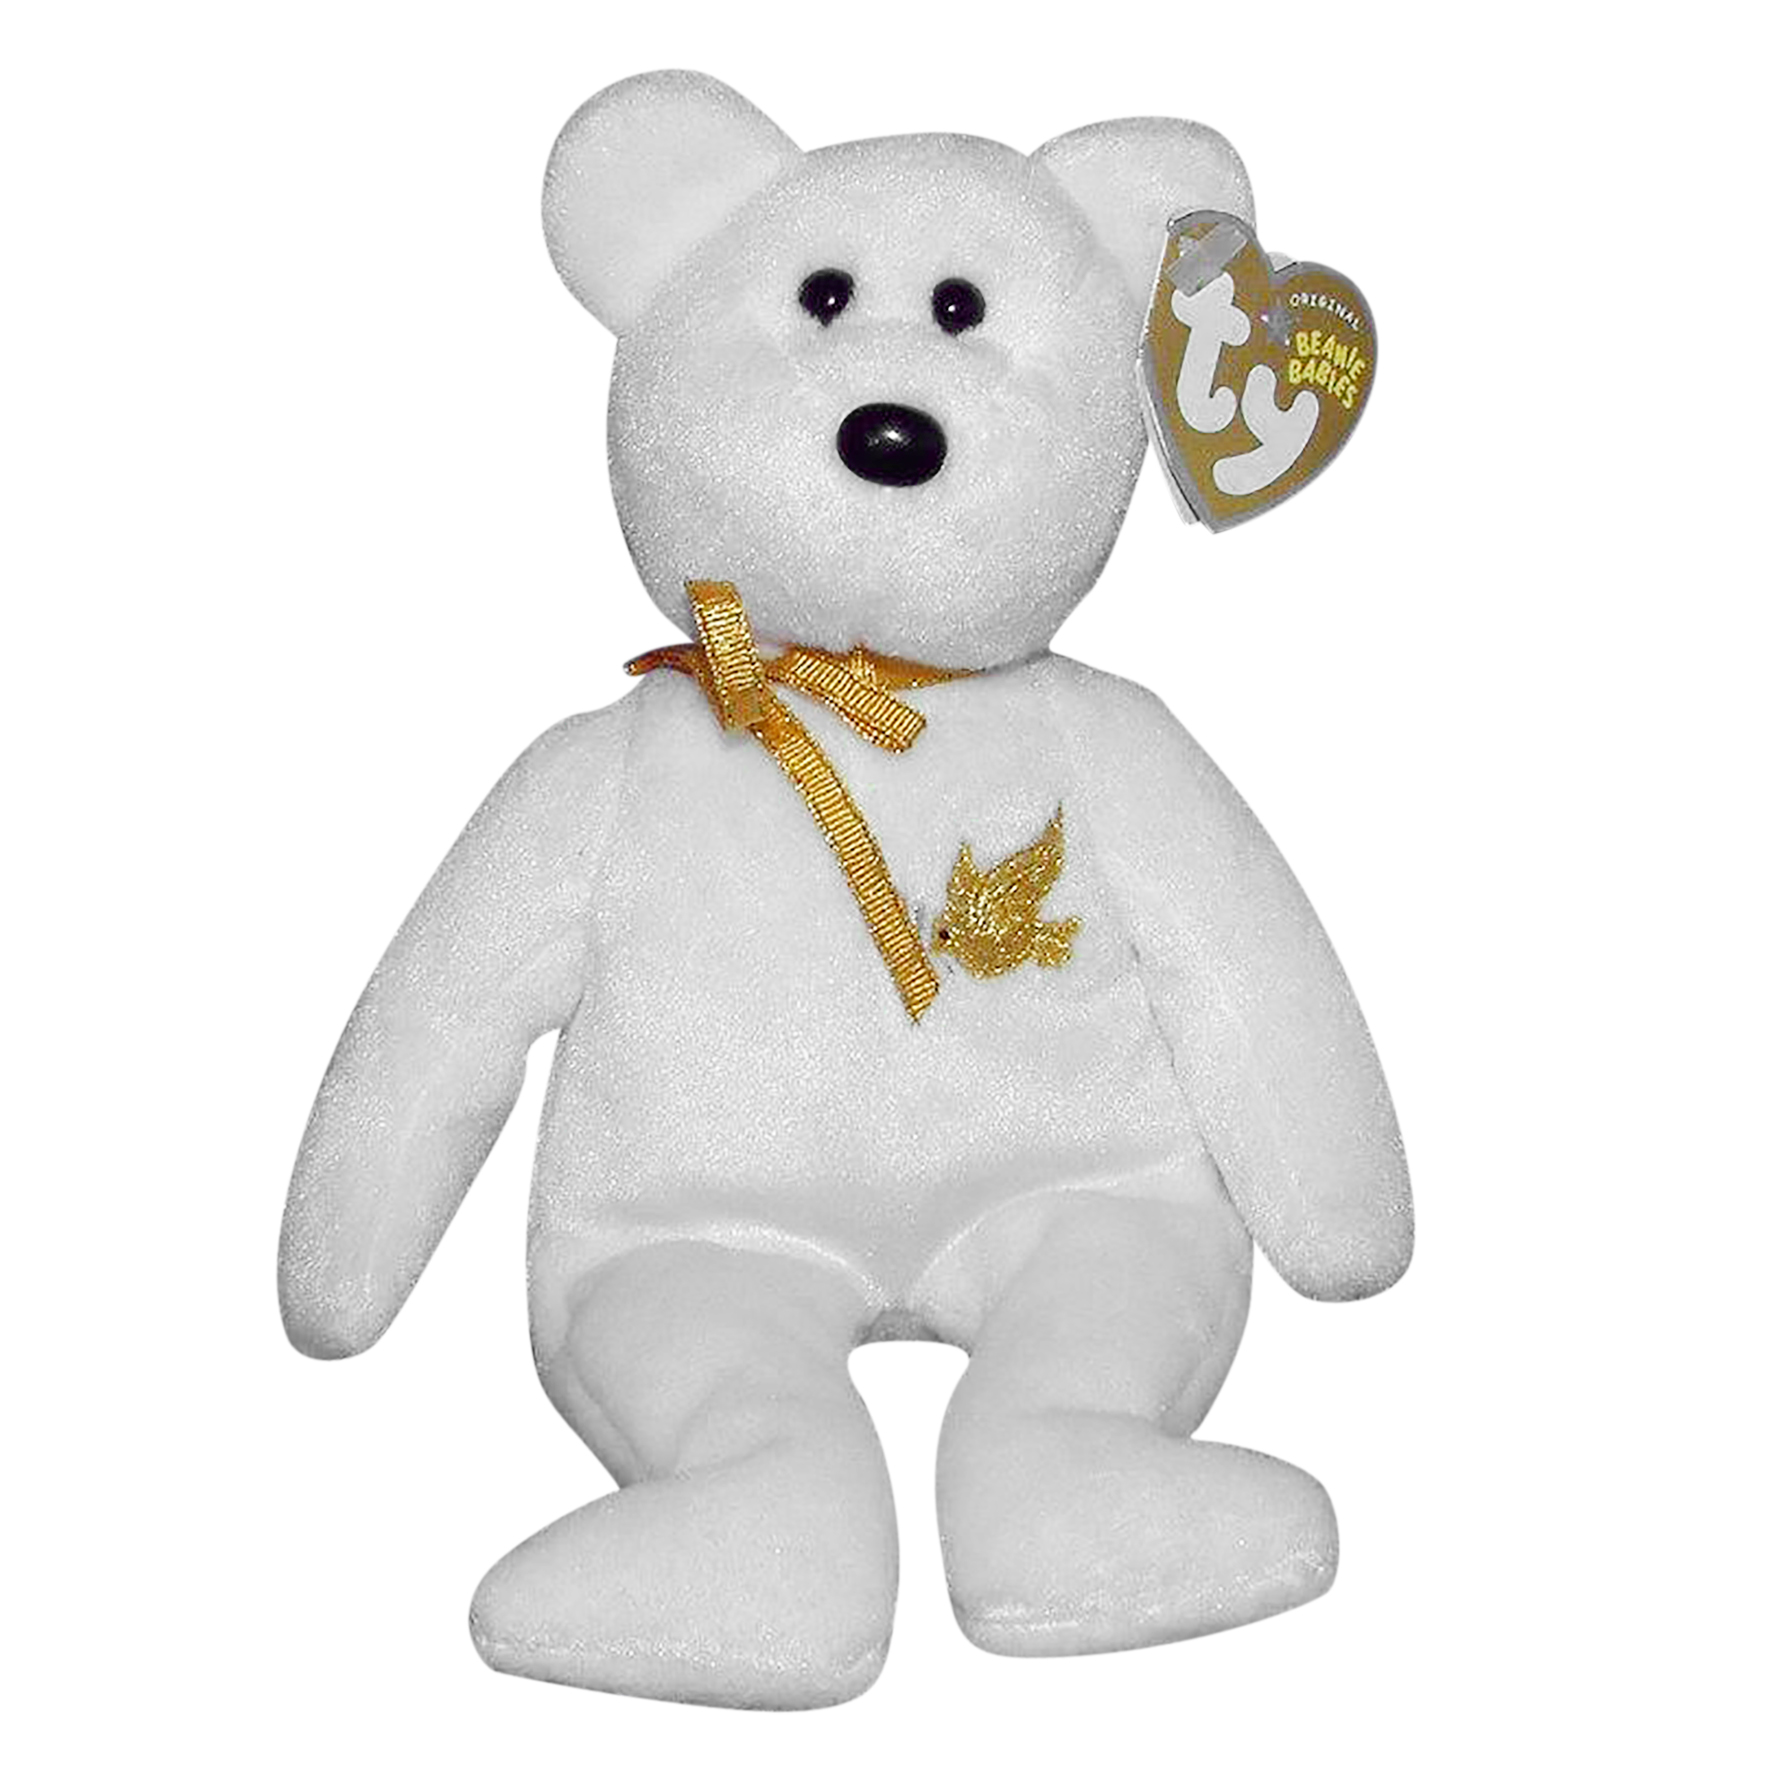 Ty Beanie Baby Holy Father - MWMT (Bear) 8421402656 | eBay